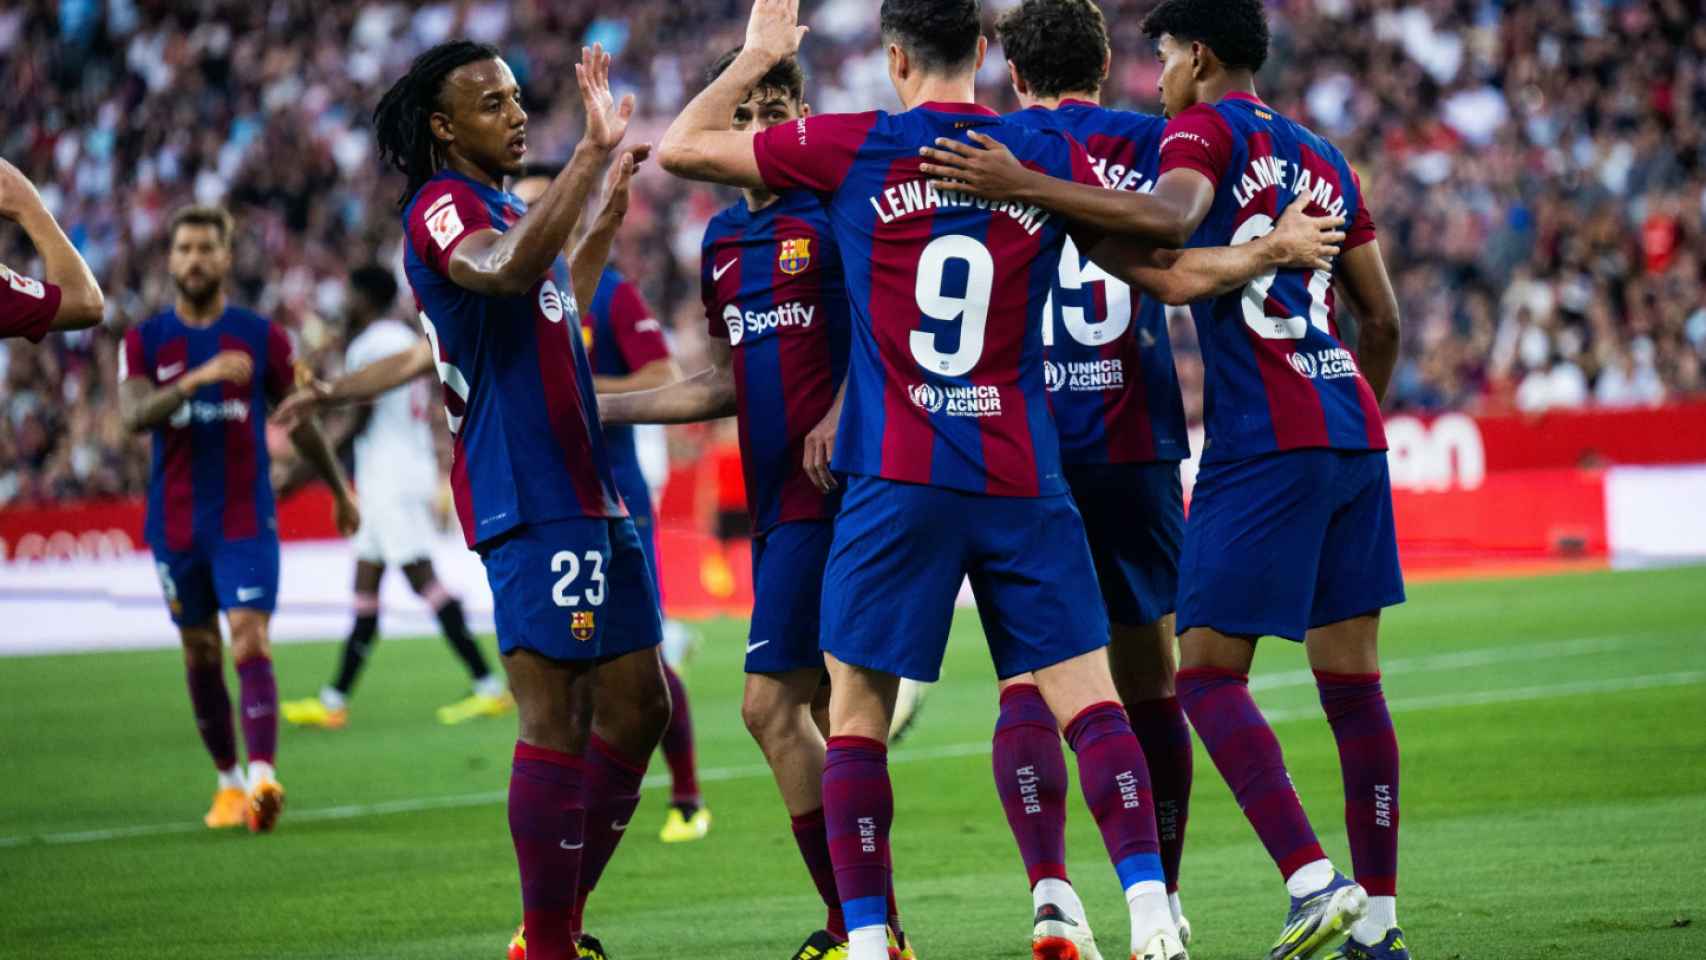 Los jugadores del Barça celebran un gol contra el Sevilla